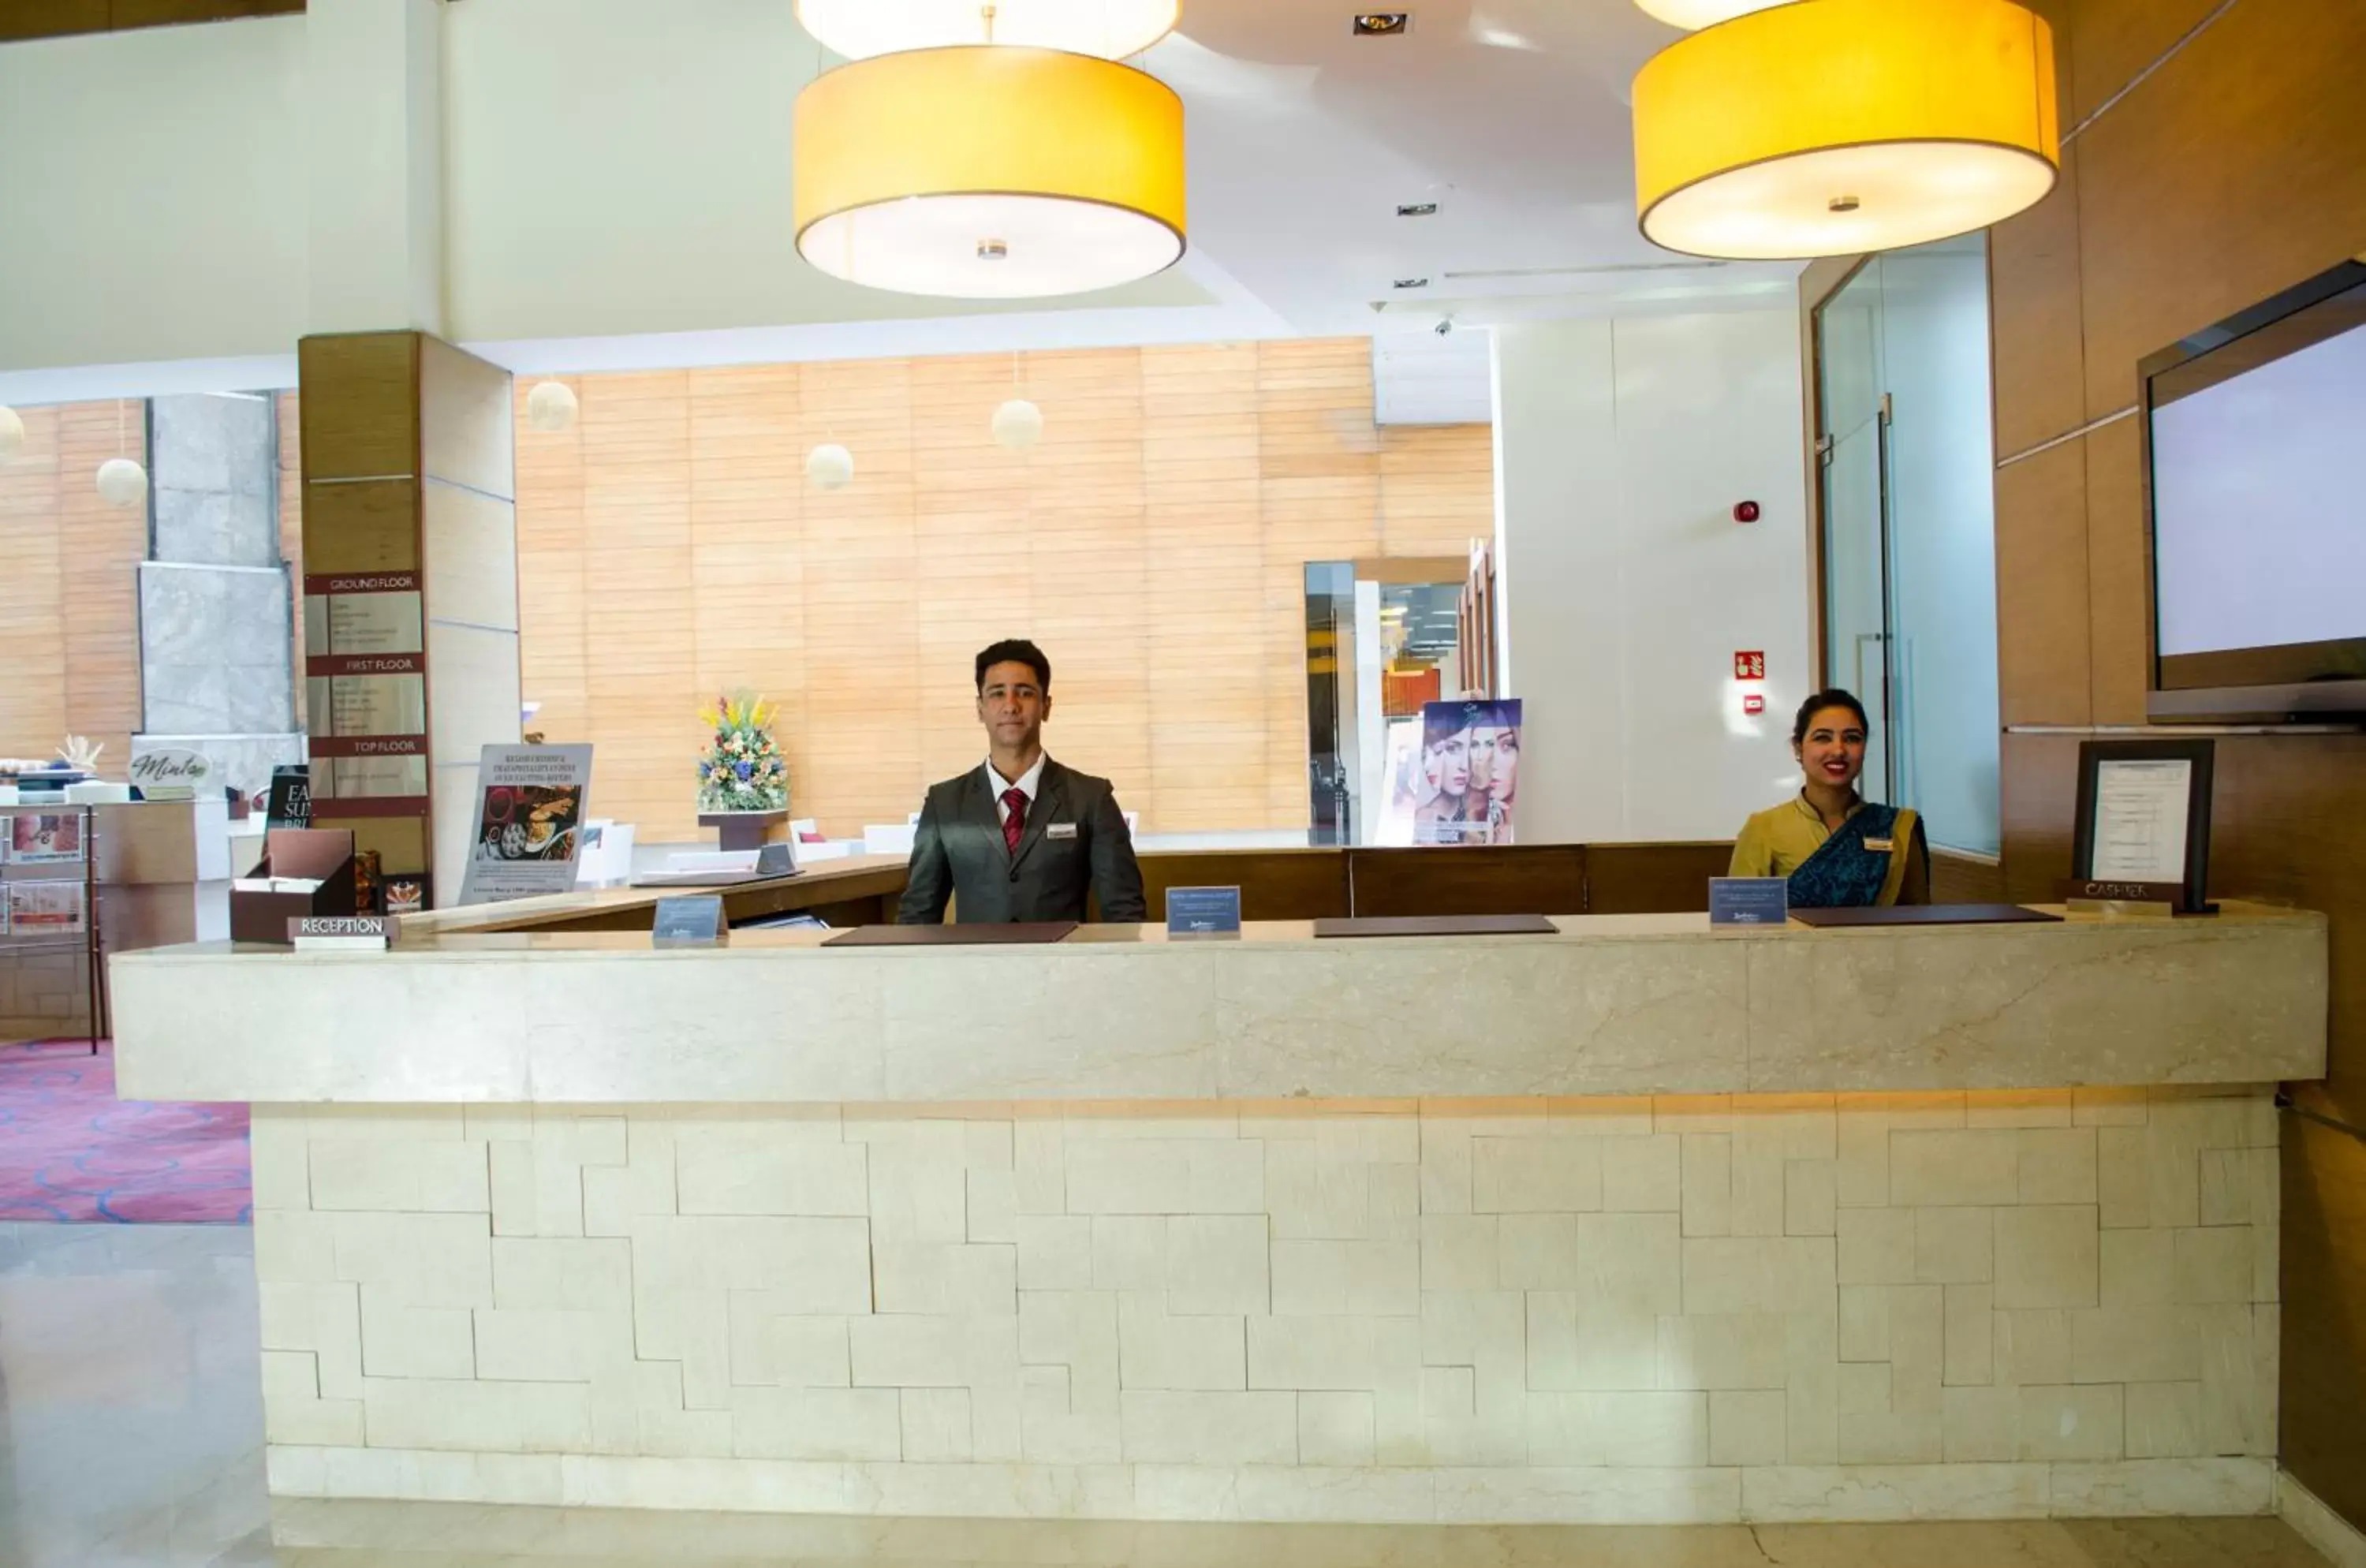 Lobby or reception, Lobby/Reception in Radisson Blu Hotel, Greater Noida